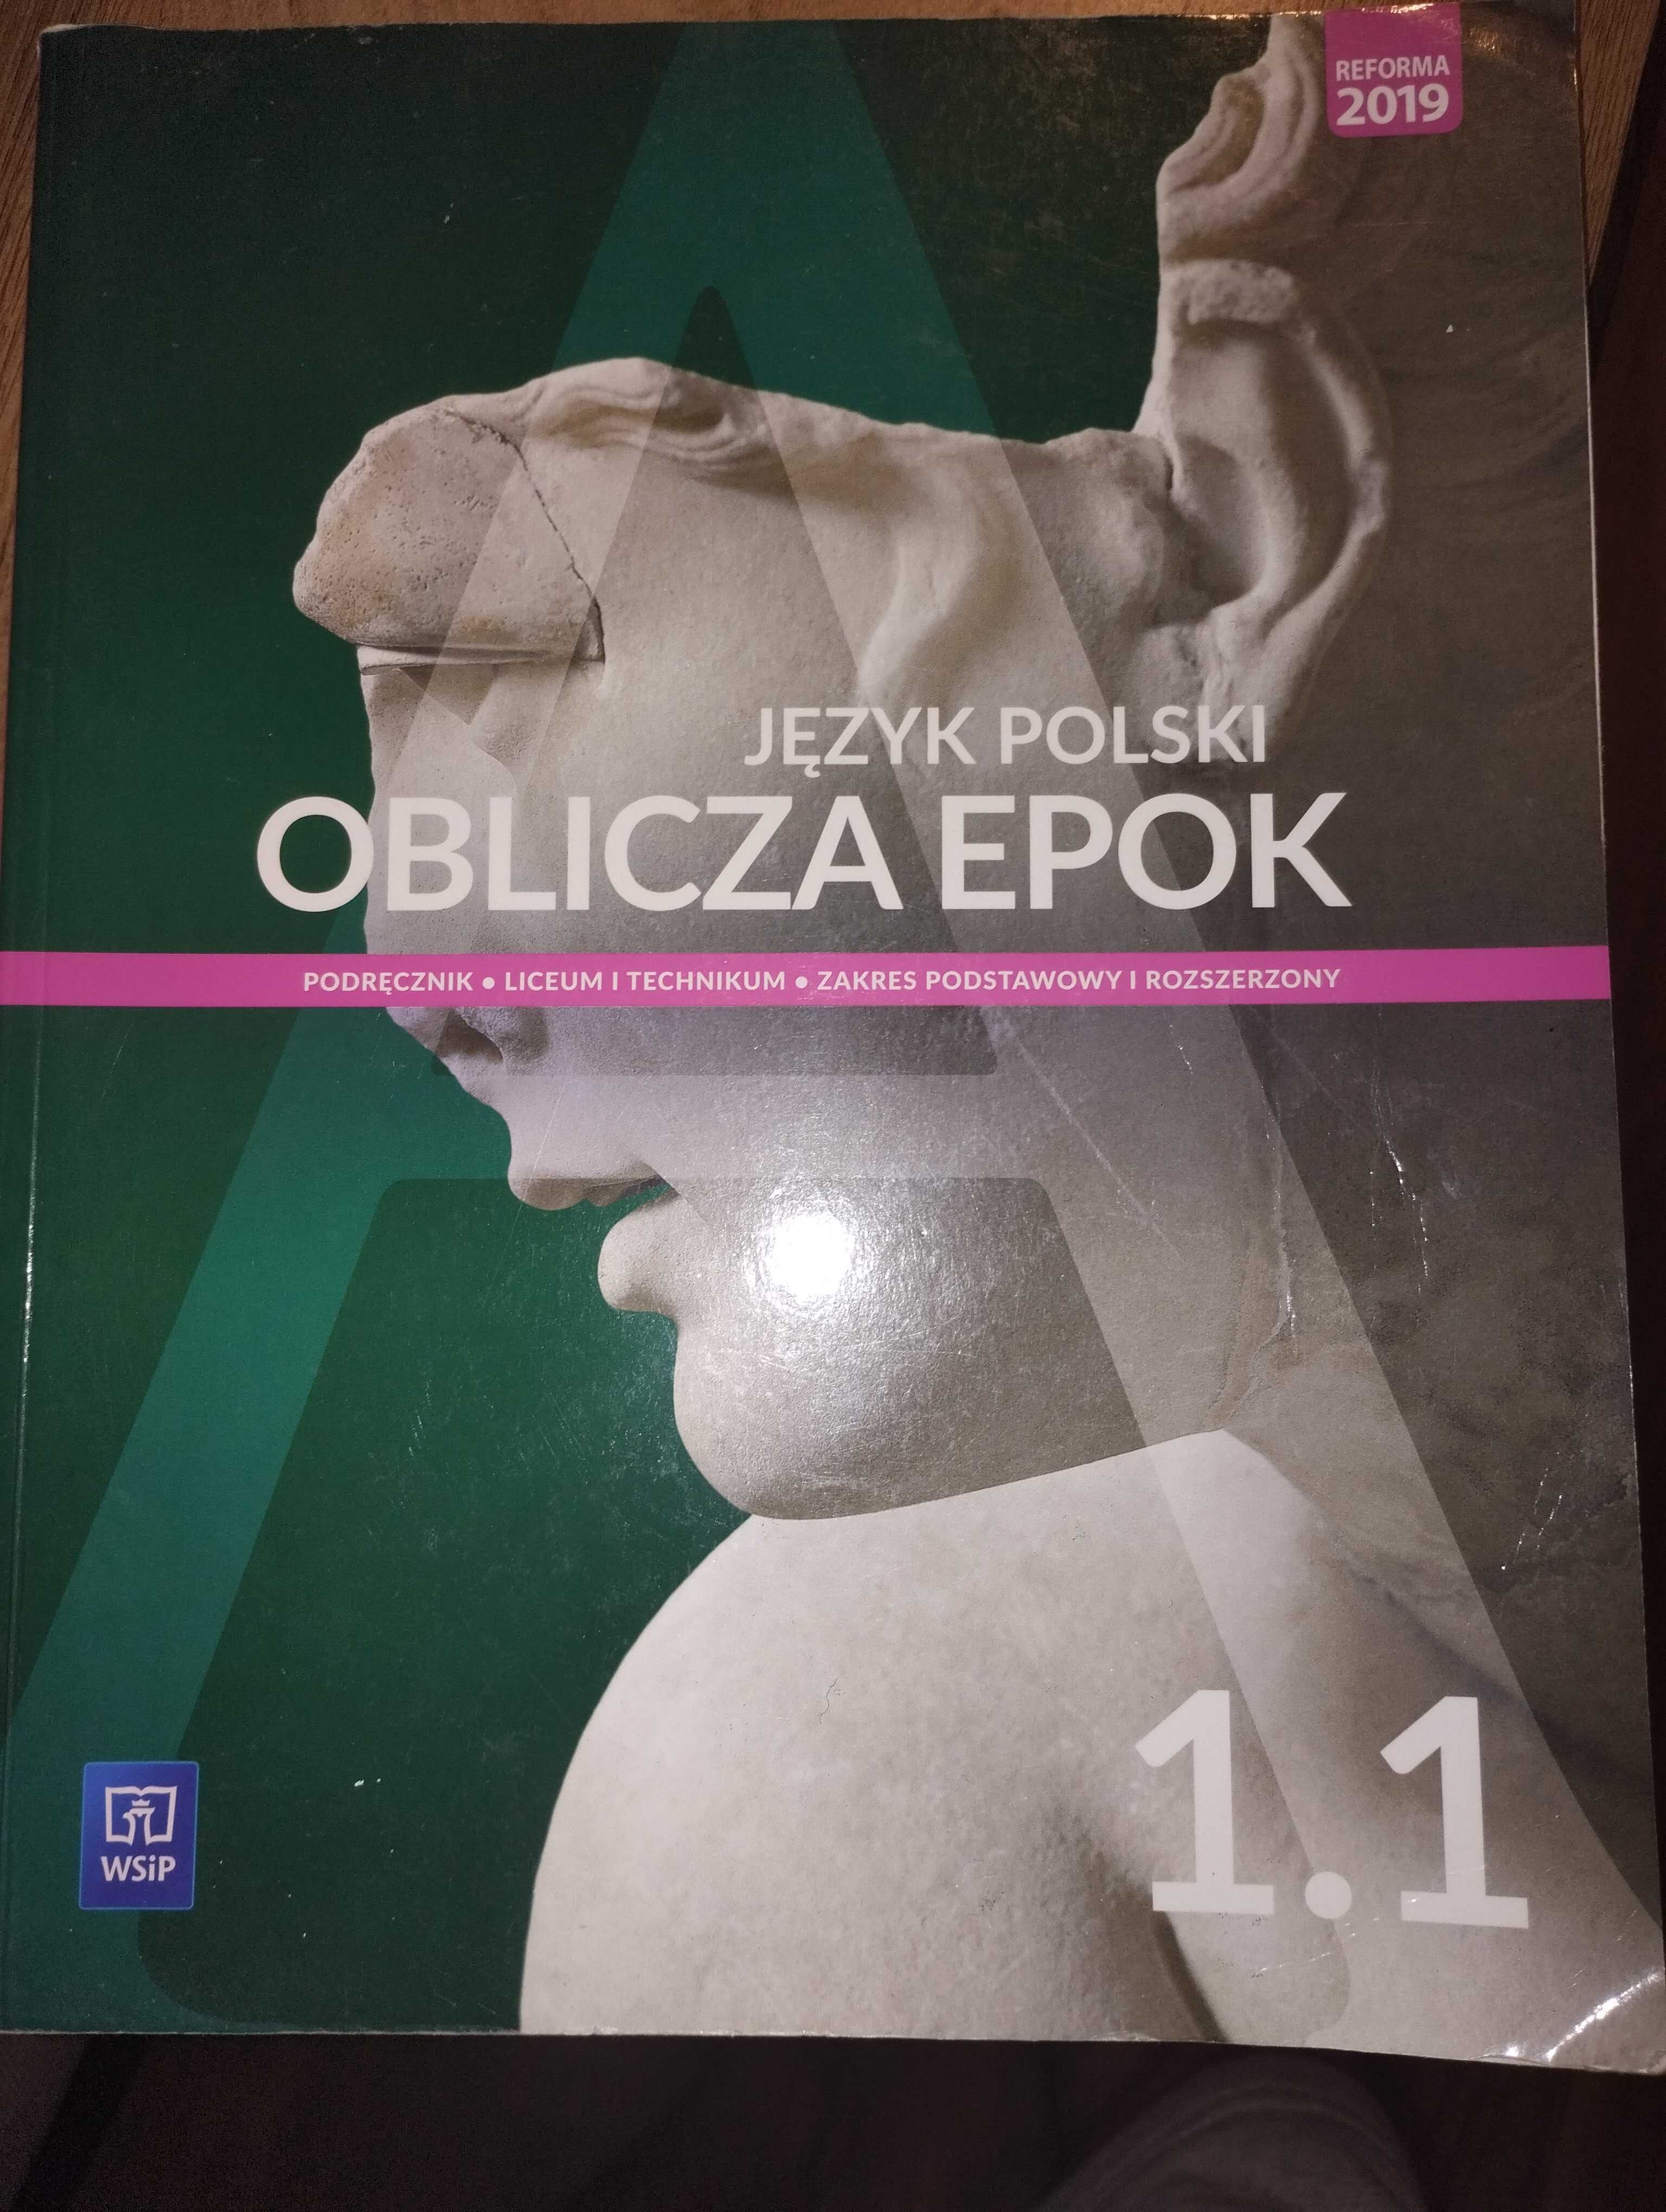 Język polski Oblicza epok 1.1